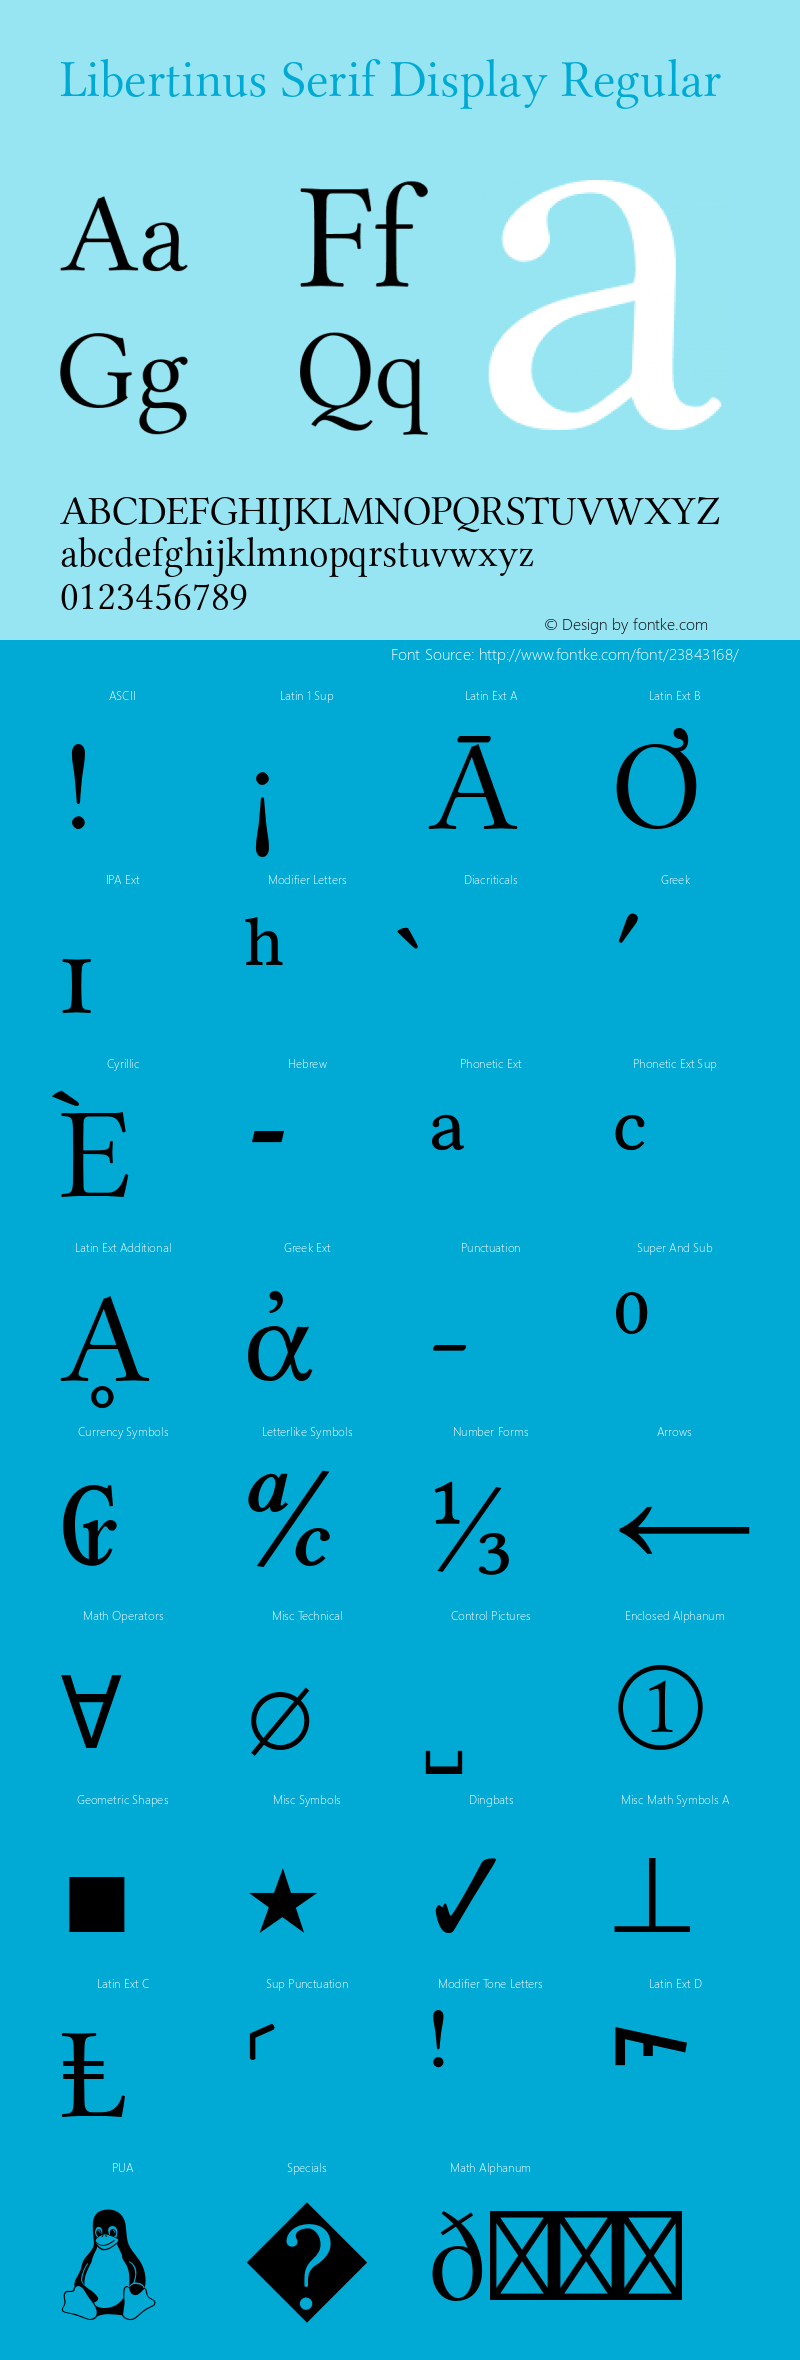 Libertinus Serif Display Version 6.5 Font Sample